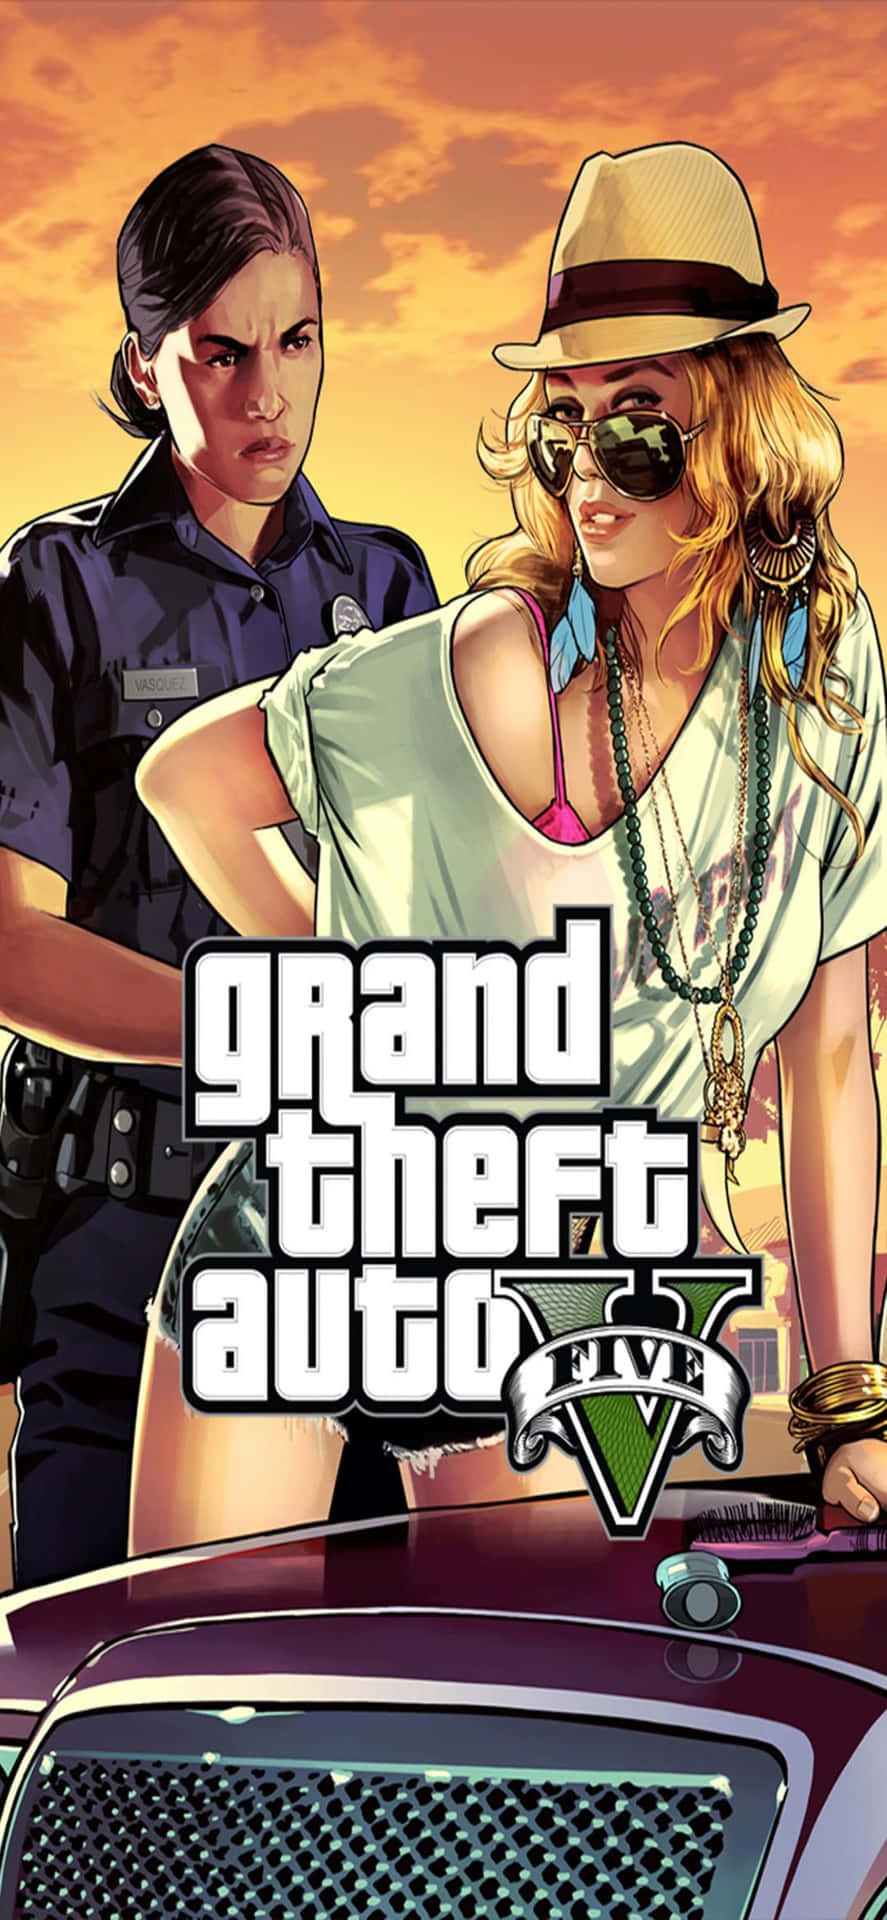 Iphonex-bakgrund Med Grand Theft Auto V-motiv Och Shelby Welinder.